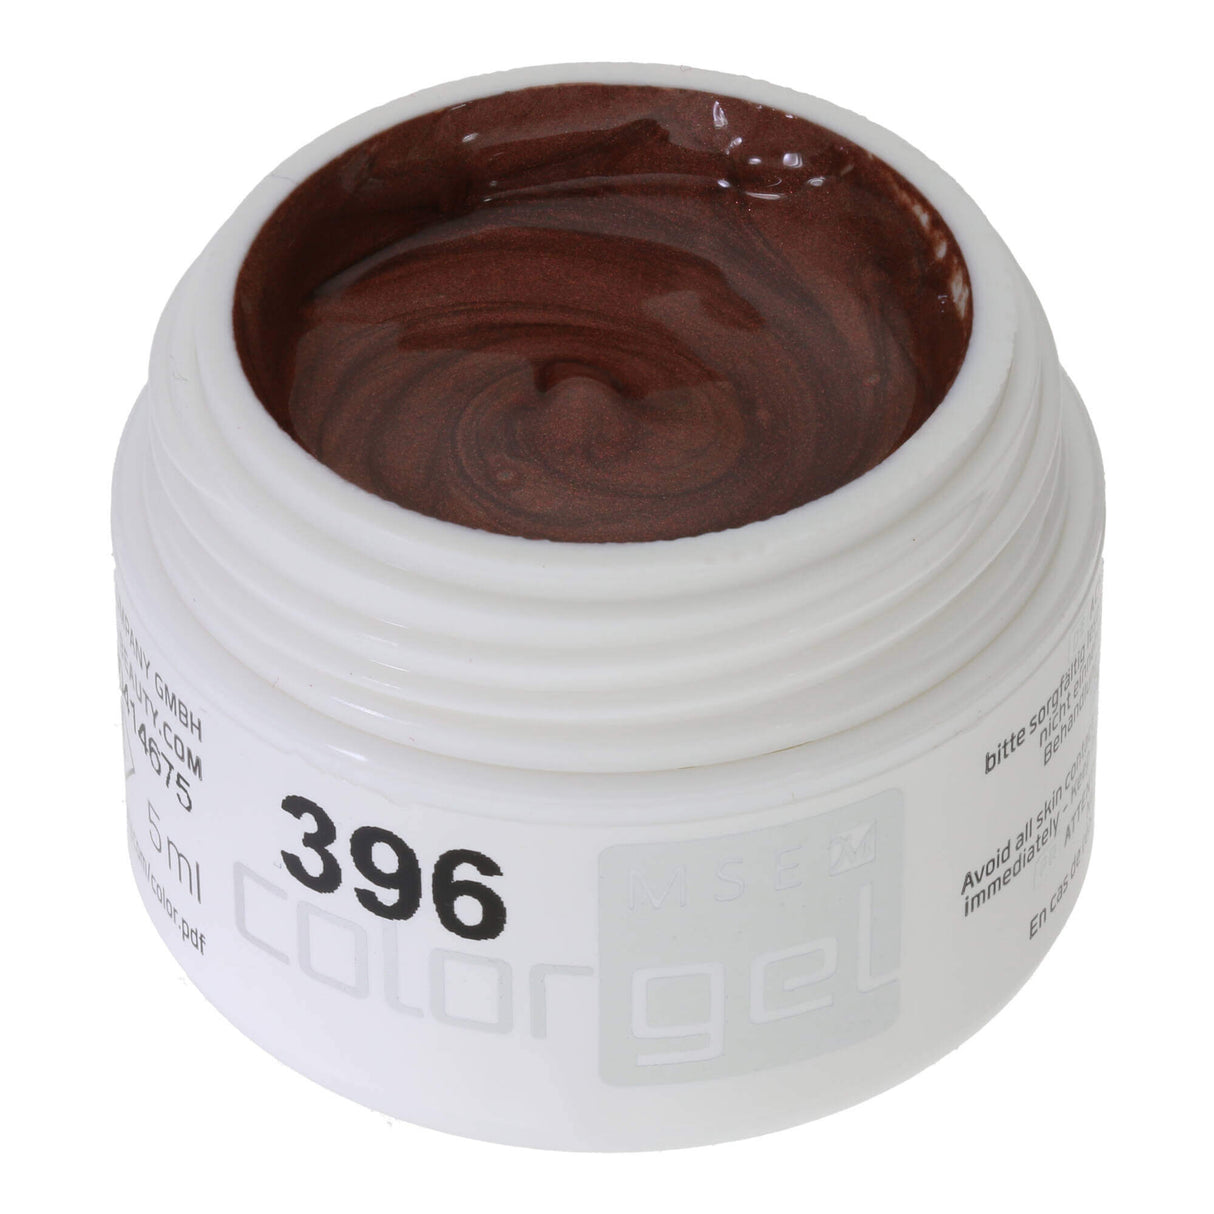 # 396 Premium-EFFEKT Color Gel 5ml Tông màu đồng lung linh huyền ảo